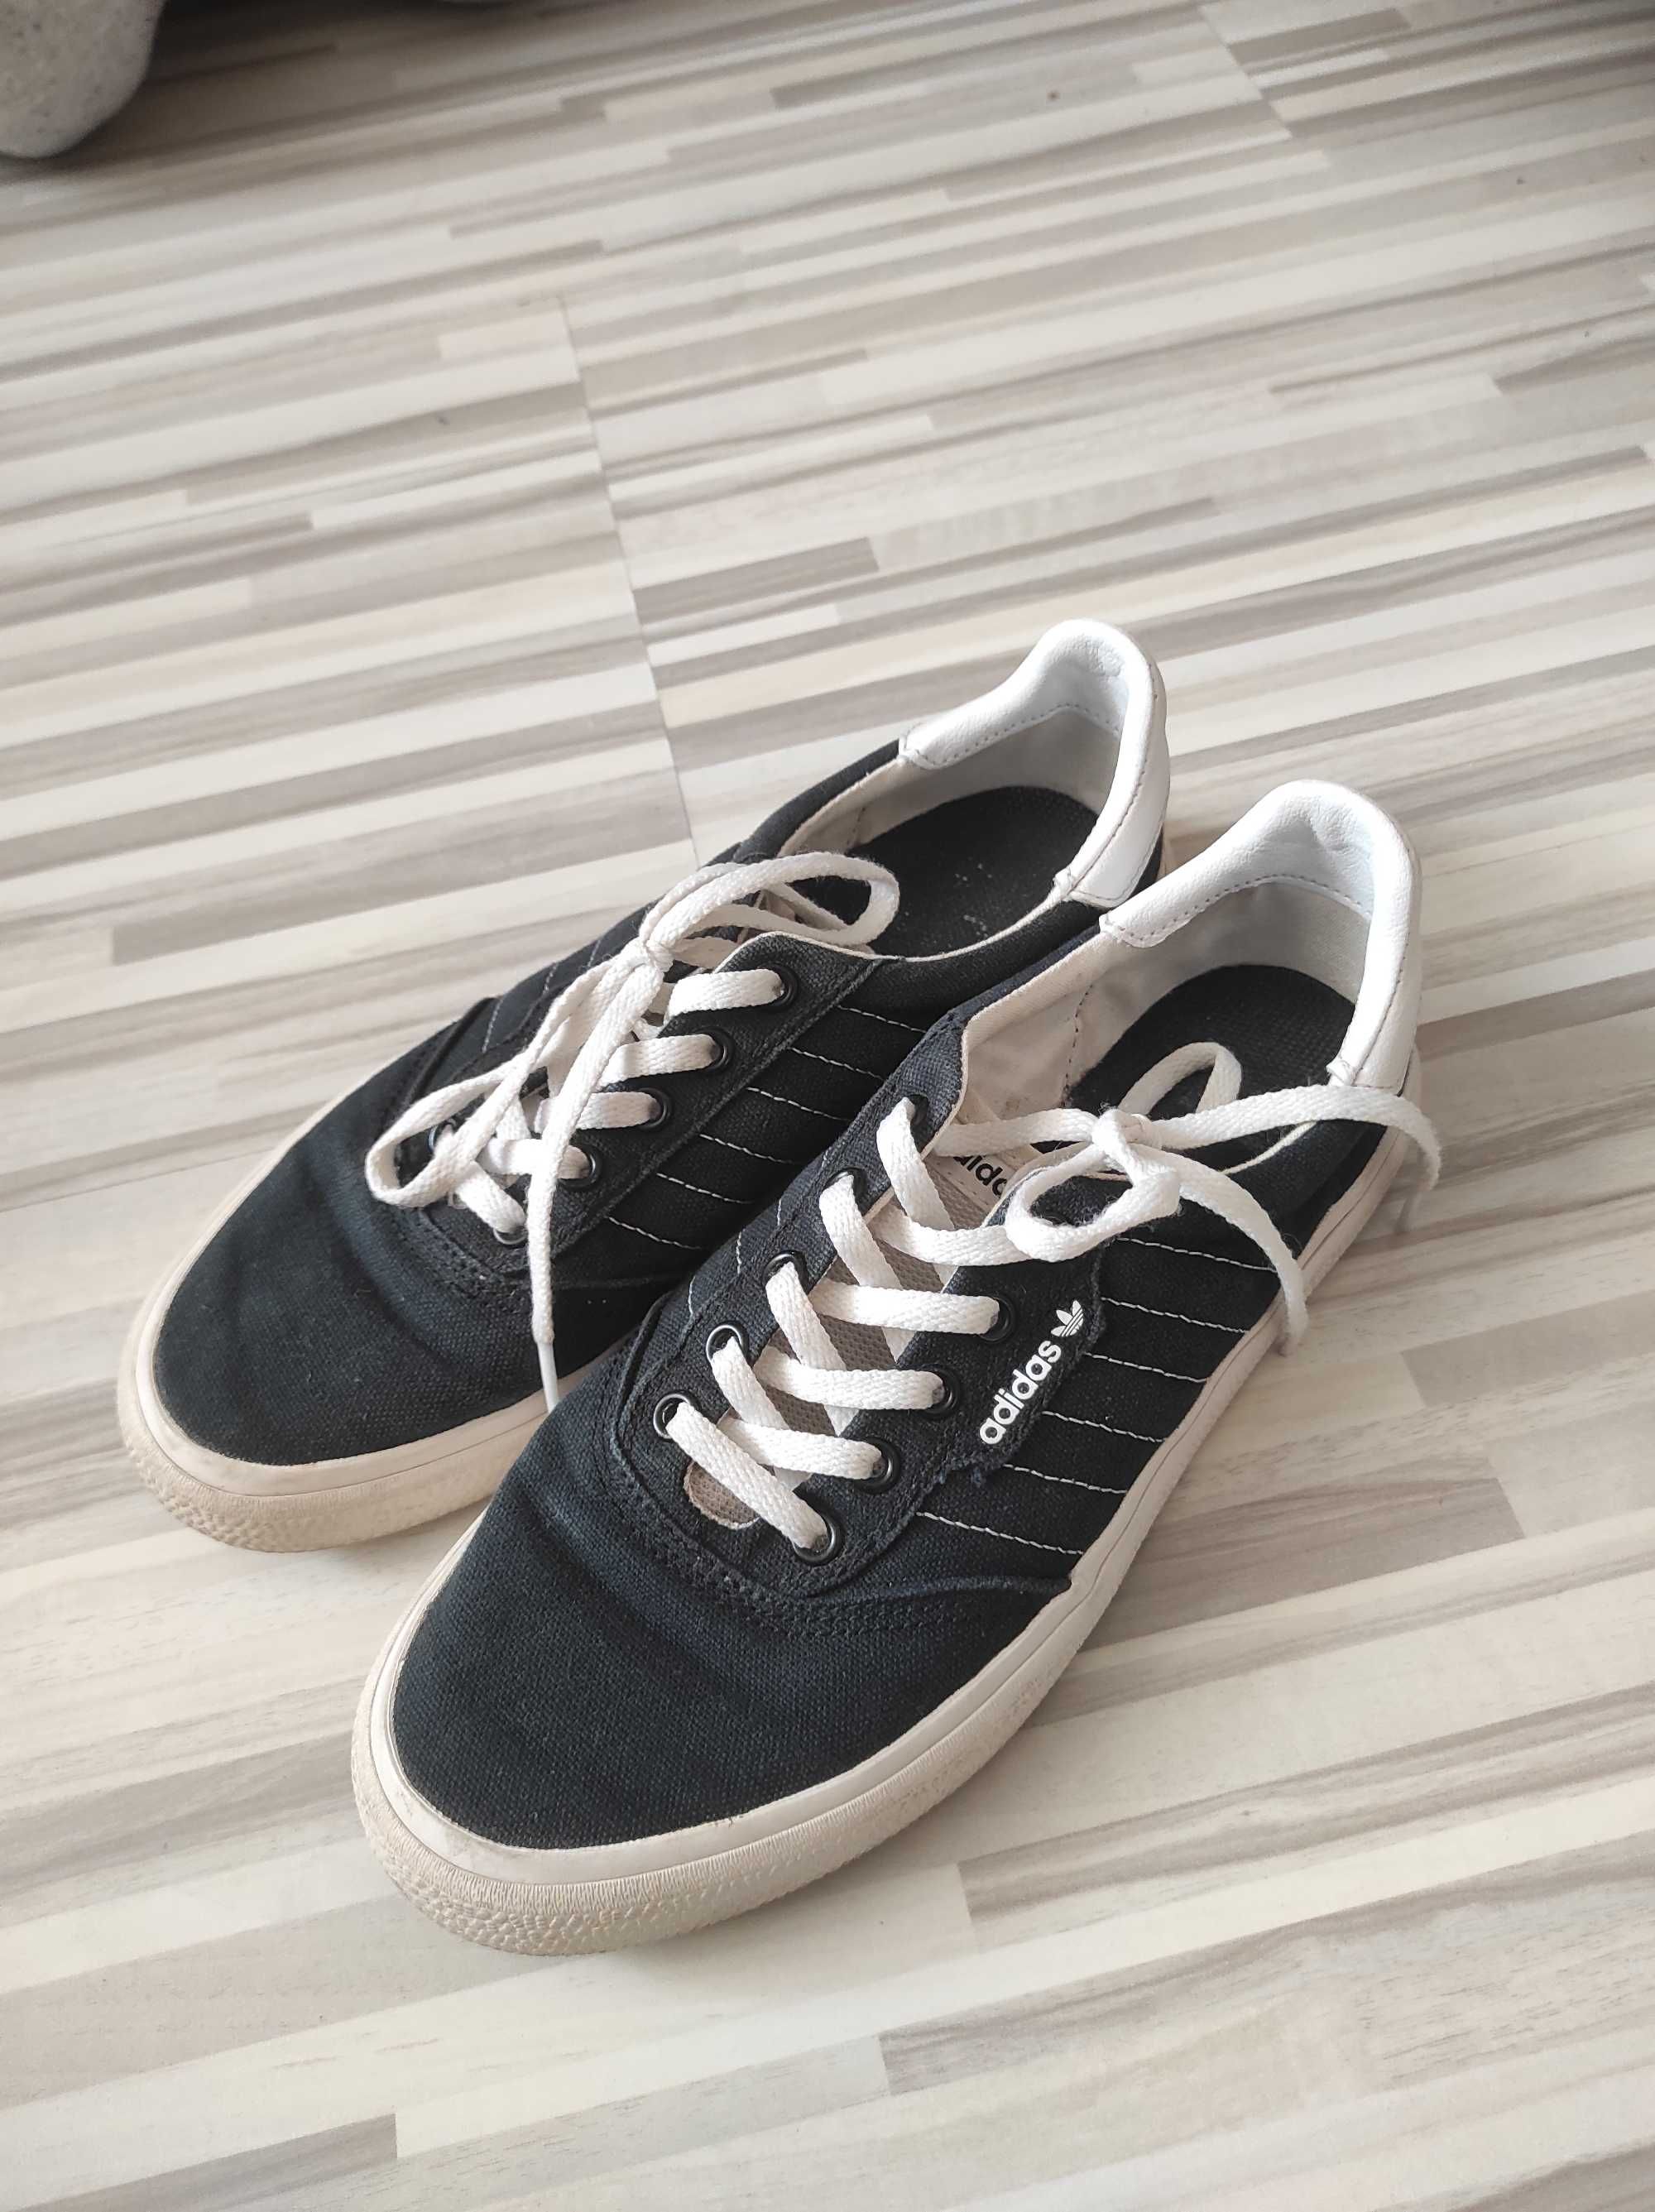 Trampki Adidas Black 3MC Shoes rozmiar 39 1/3